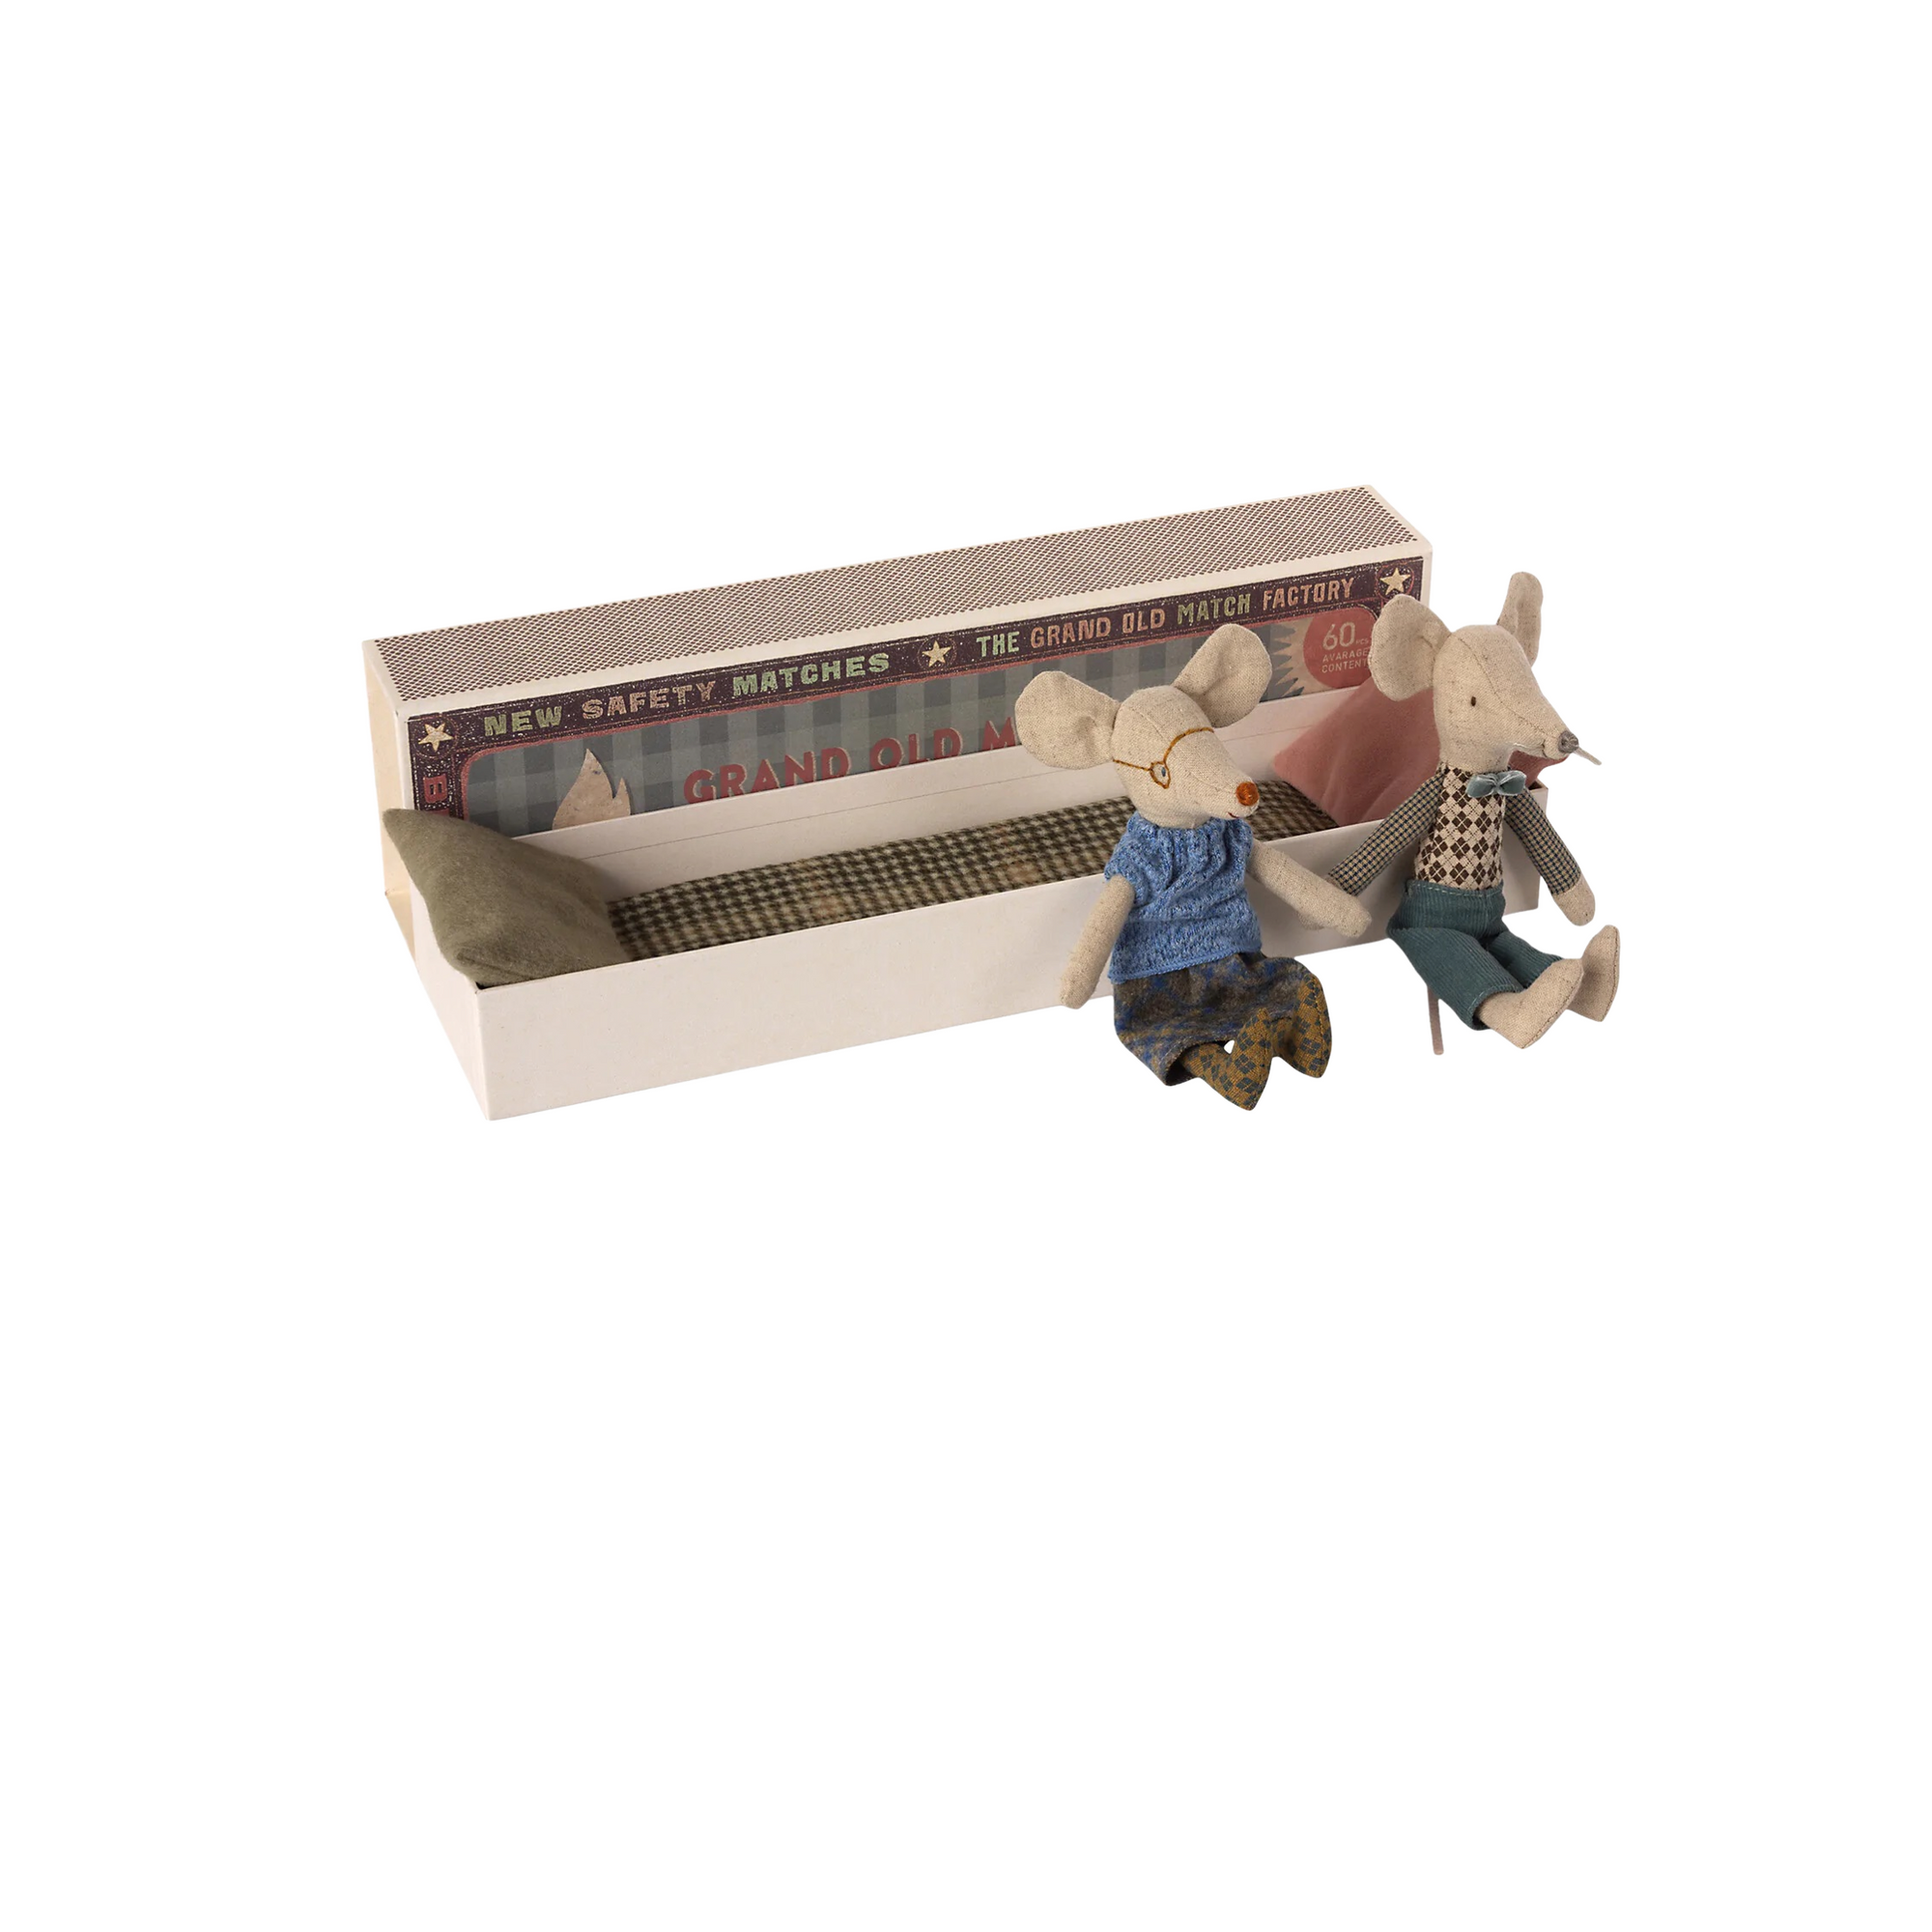 Miniature Grandma & Grandpa Mice In Matchbox